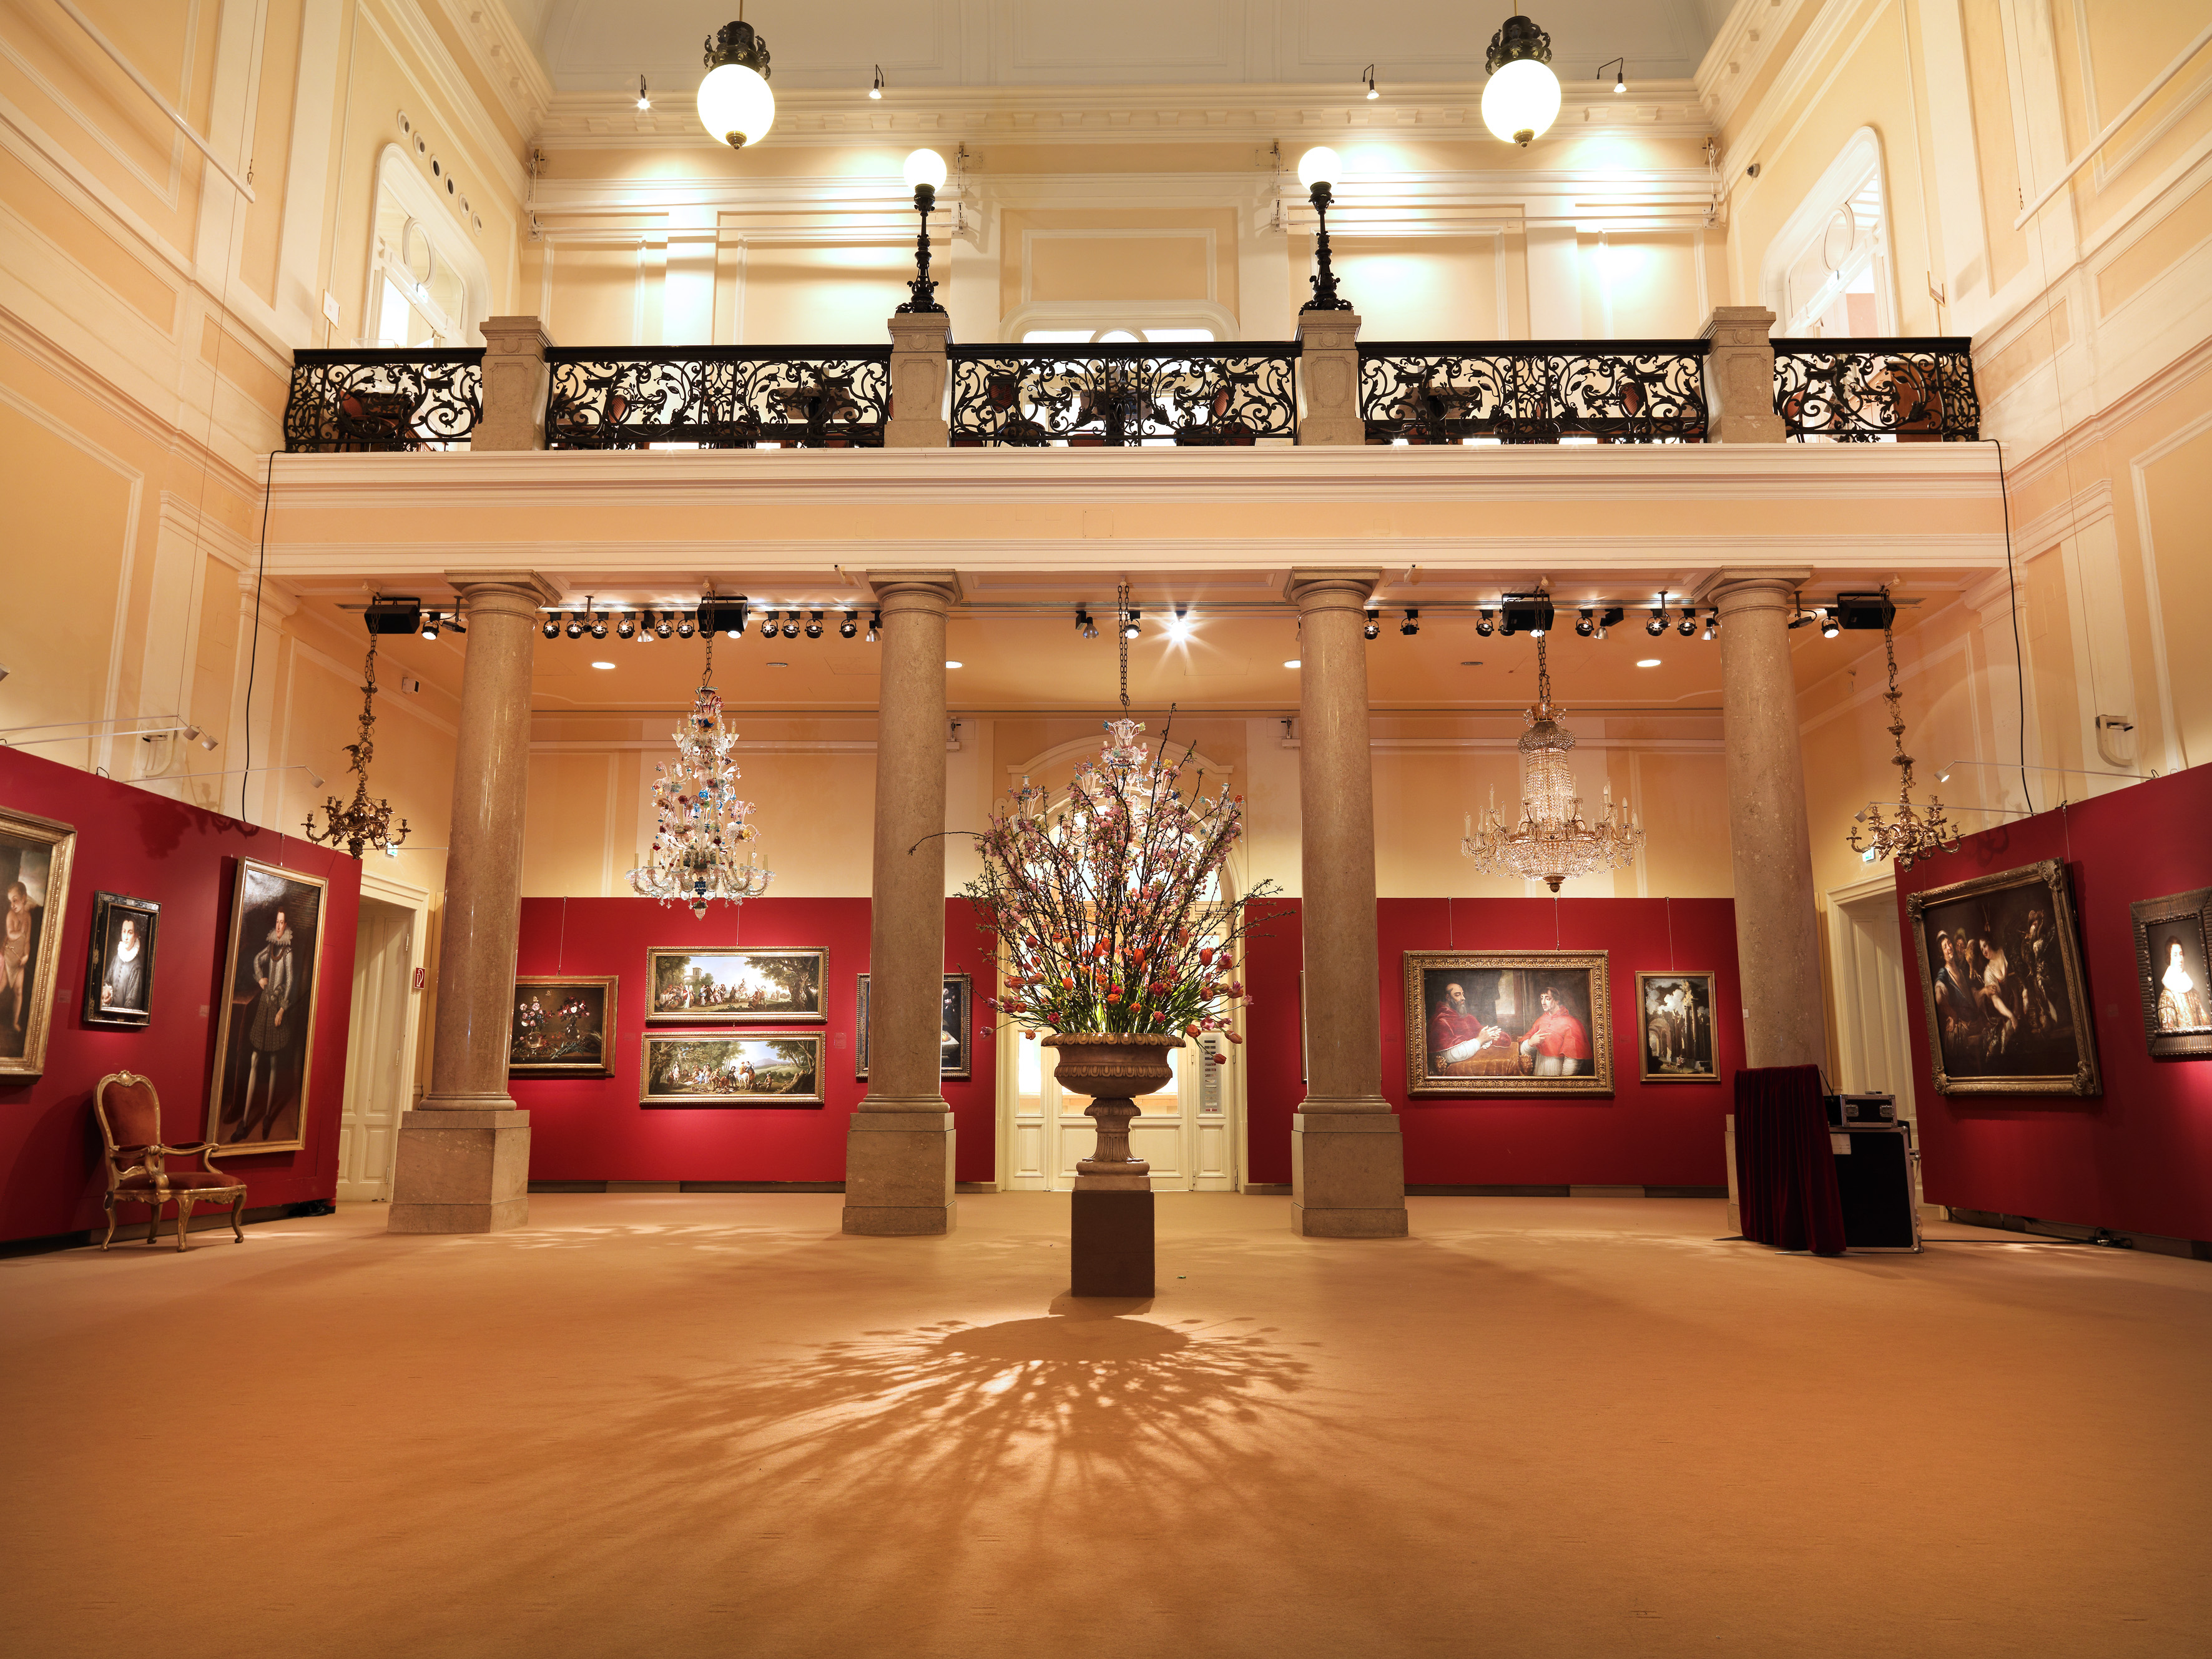 Innenraum des Dorotheum Wien mit Schaustellung von Bildern auf roter Rückwand, Gallerie und Säulen